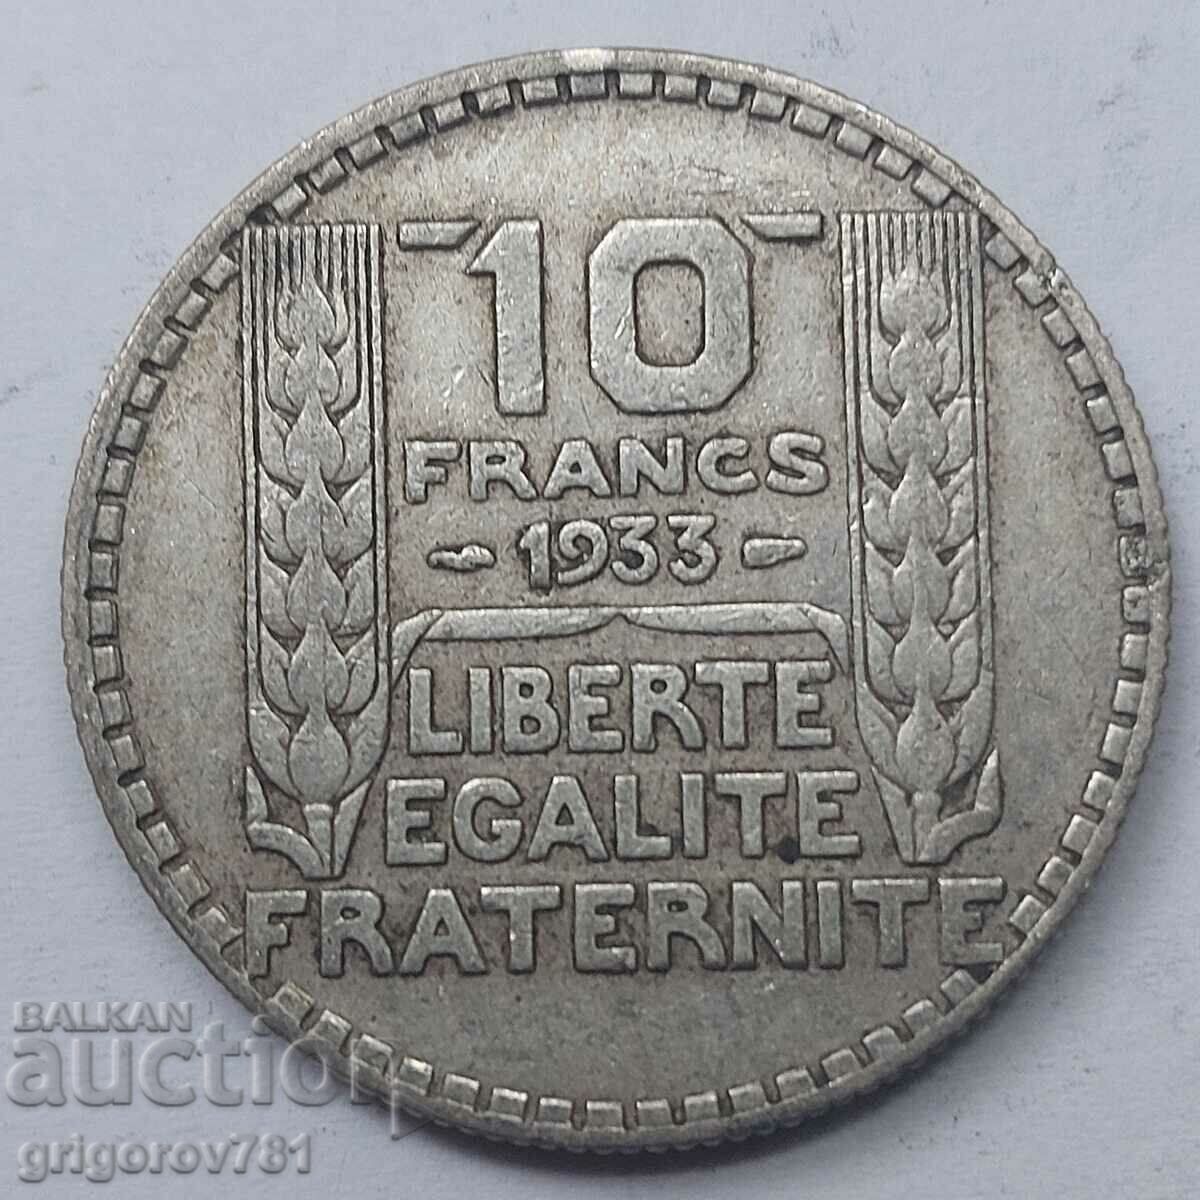 10 Φράγκα Ασήμι Γαλλία 1933 - Ασημένιο νόμισμα #31